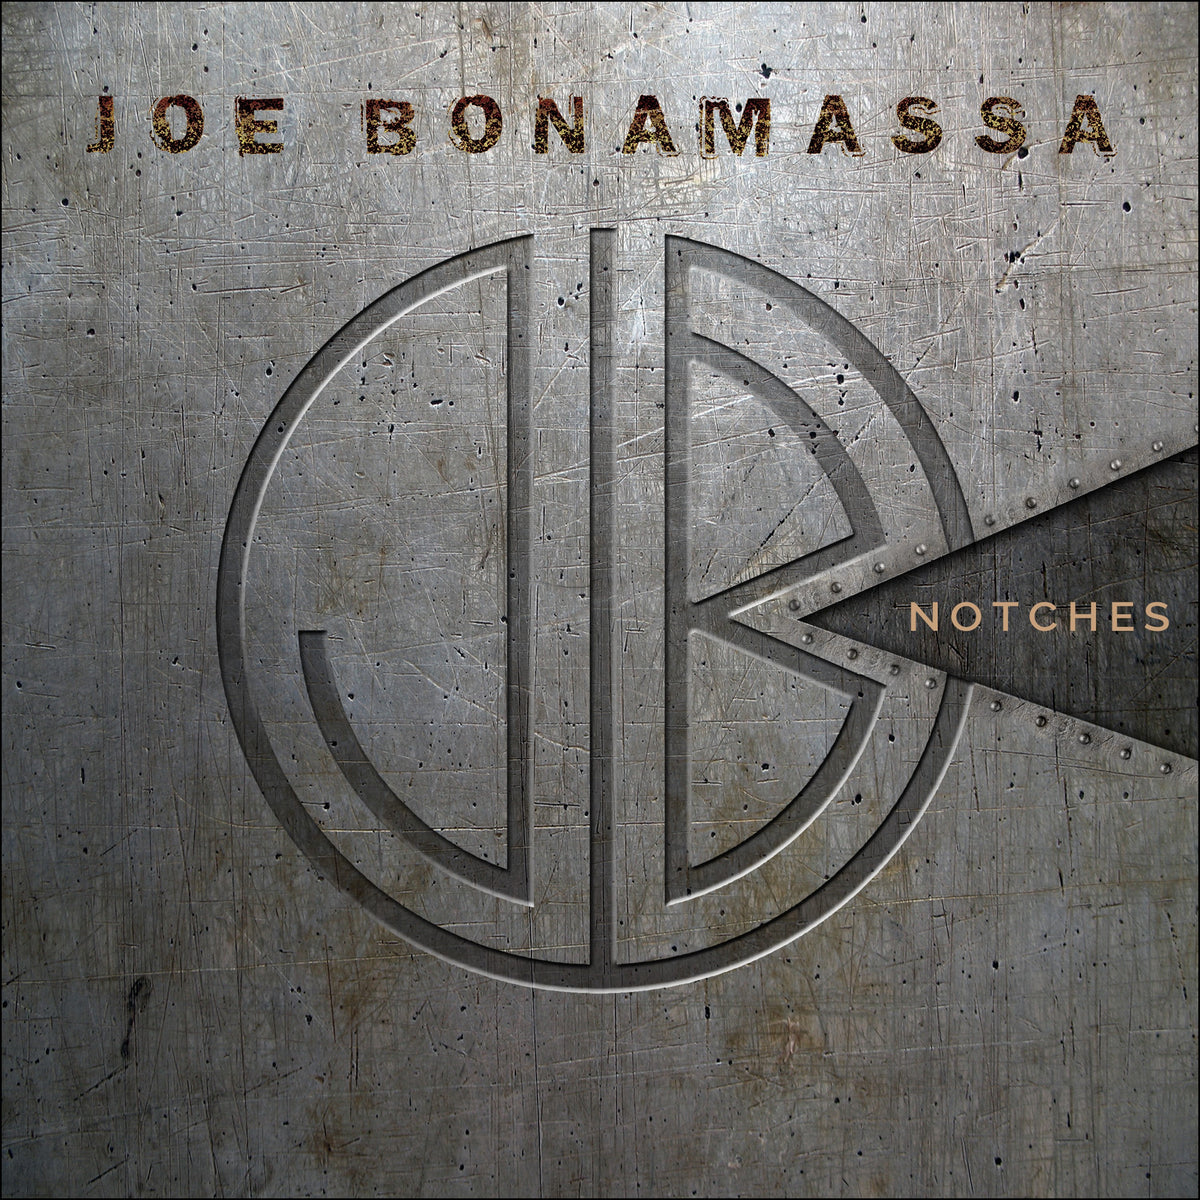 Notches - Joe Bonamassa - Single